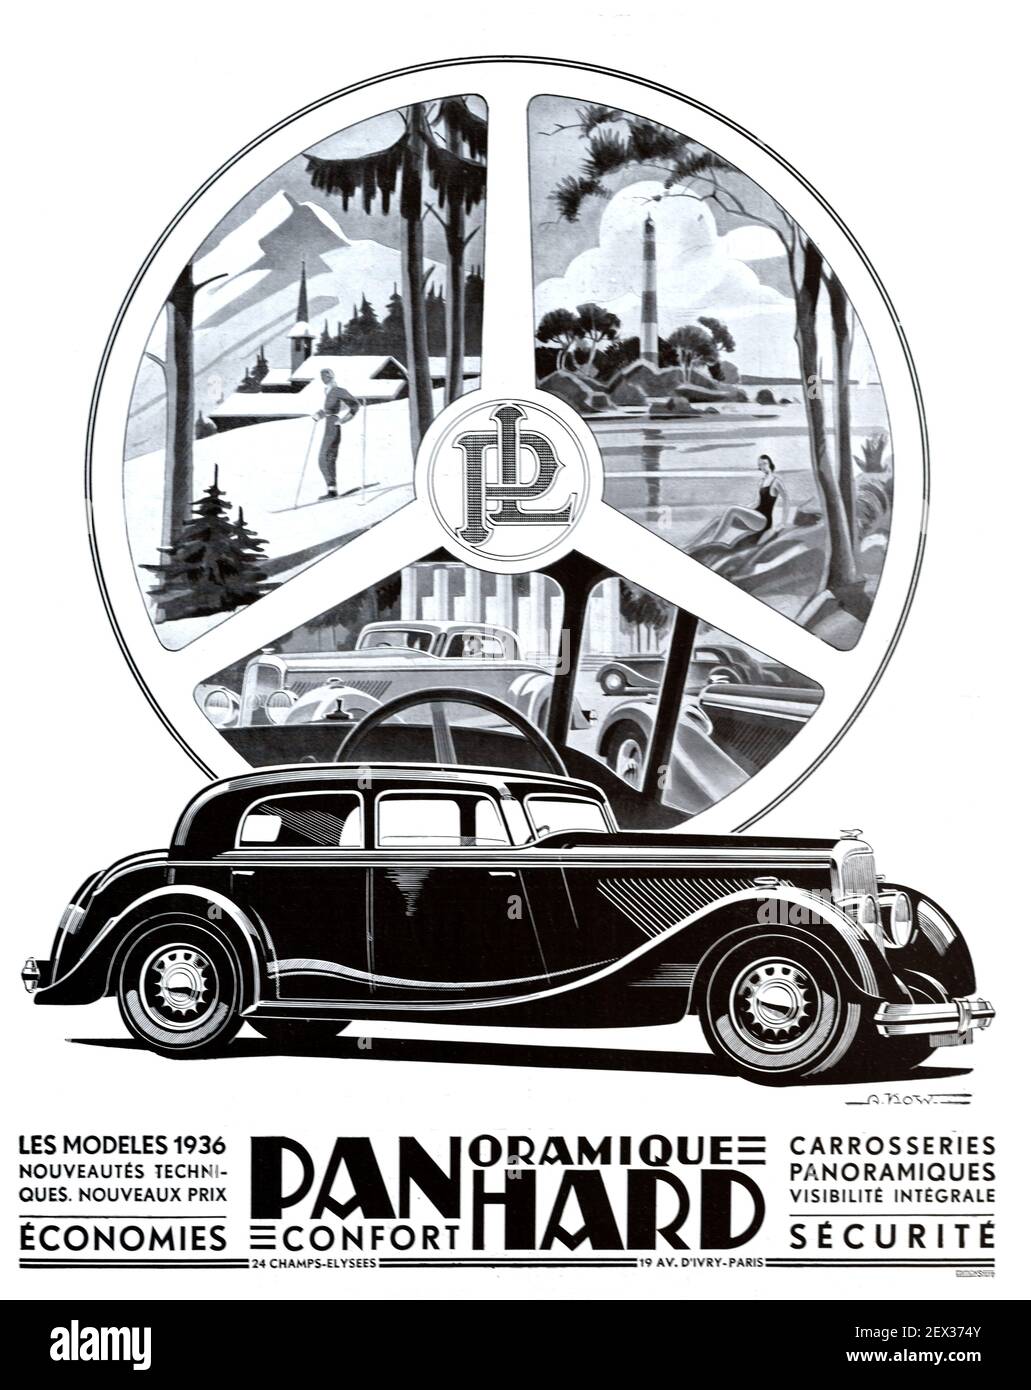 Vintage Anuncio, Publicidad o Publicidad para un Vintage Panhard Dynamic Range Car, automóvil o Motorcar 1935 Ilustración Mostrando Panhard Car e Imágenes turísticas de Mountain & sea View enmarcado por un volante Foto de stock